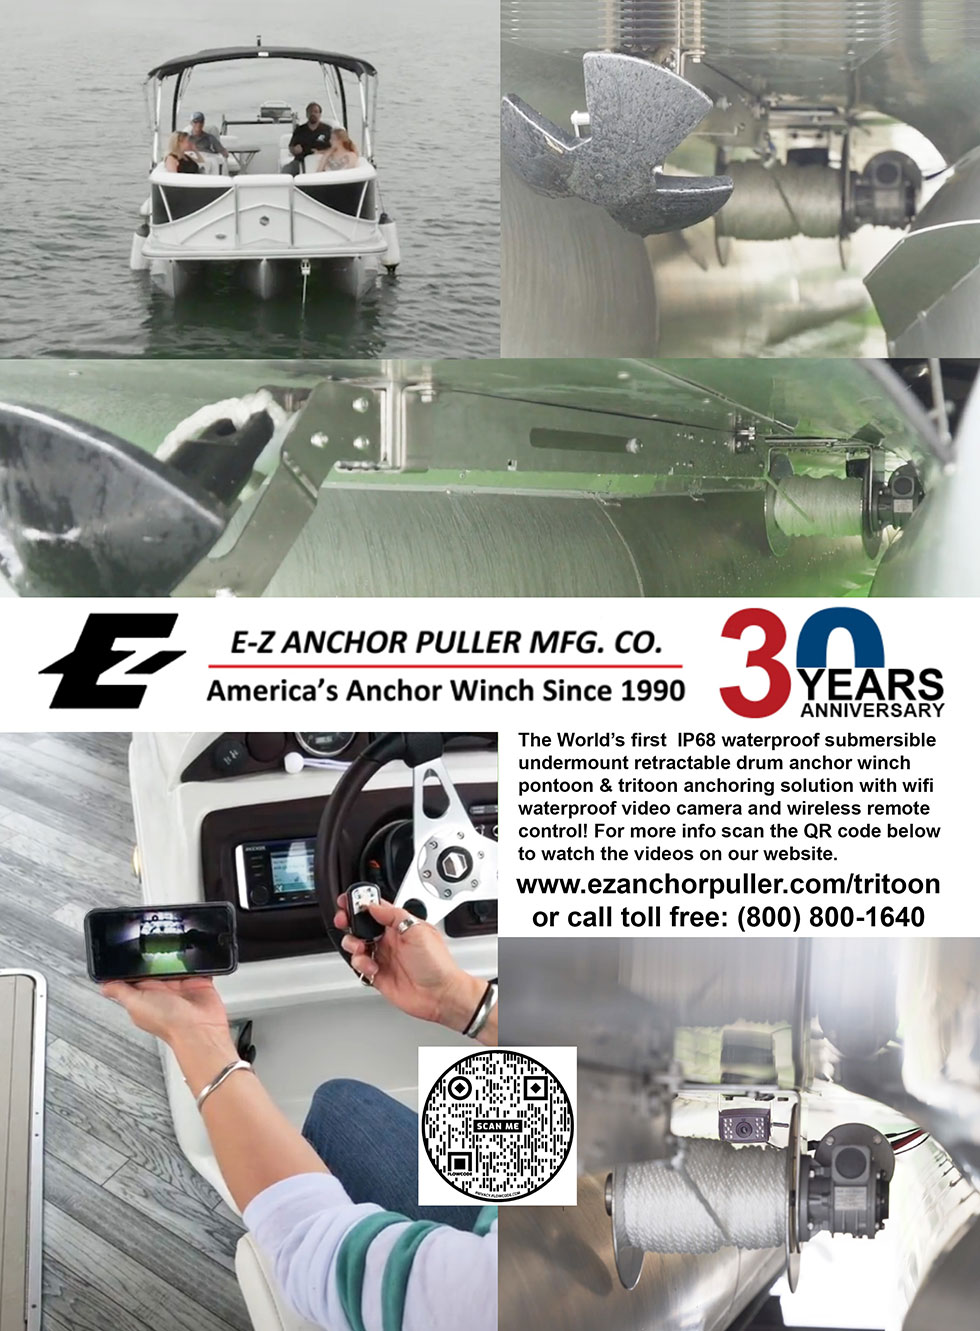 E-Z Anchor Puller MFG. CO. Advertisement